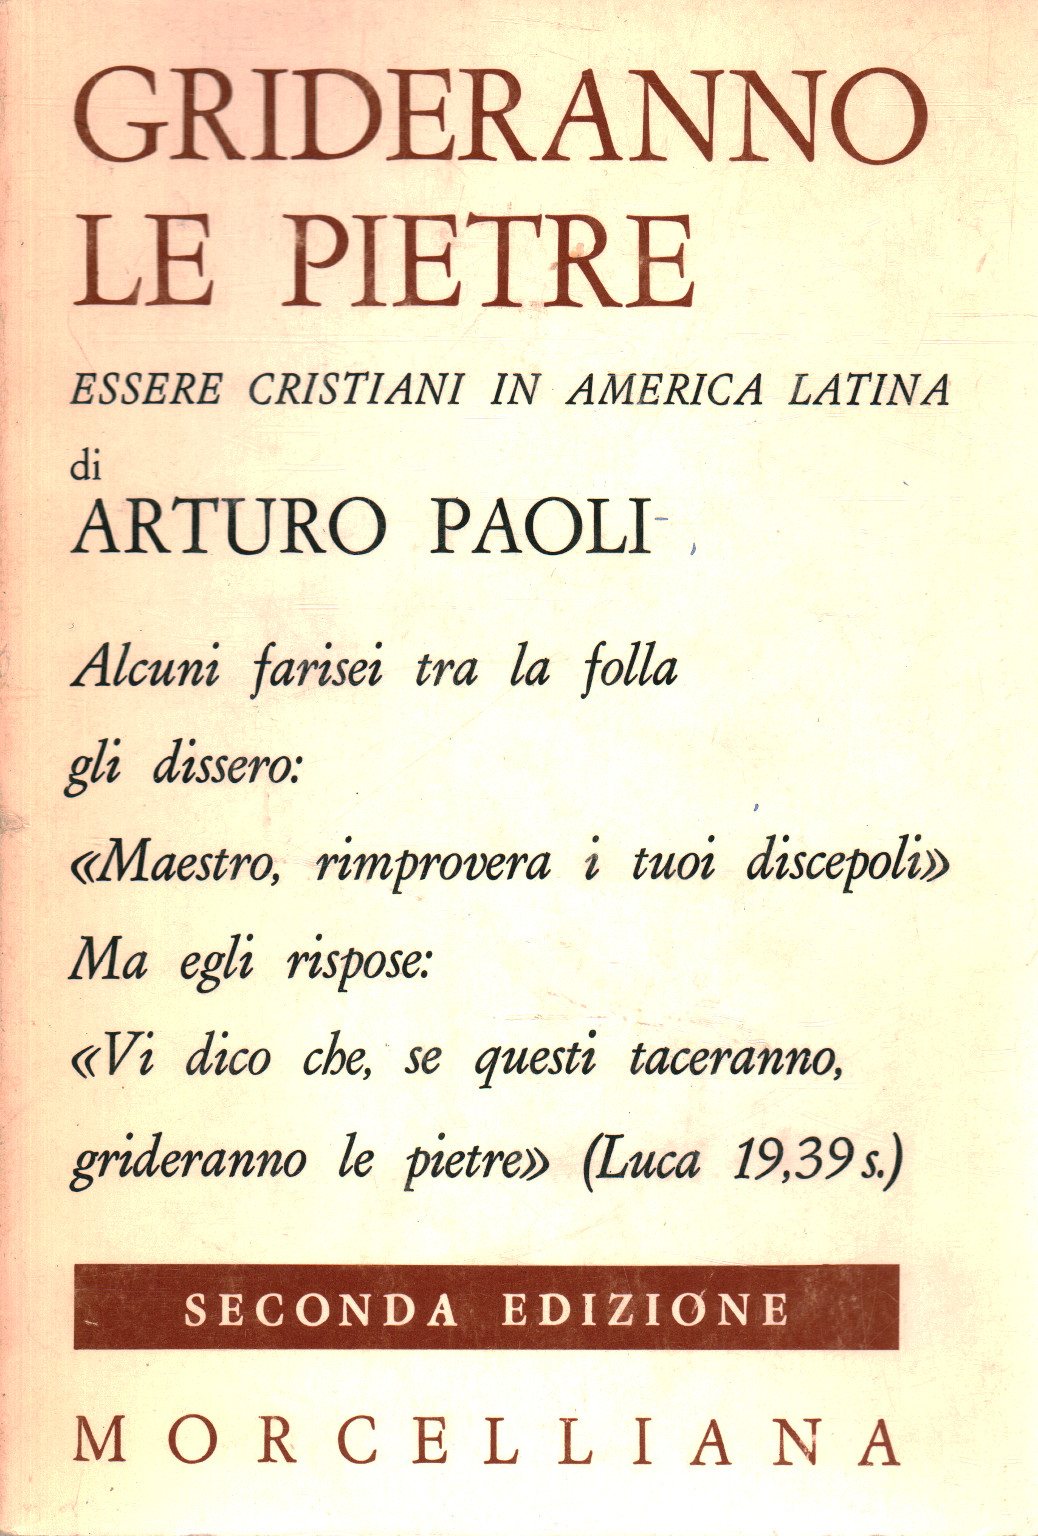 Las piedras gritar, Arturo Paoli